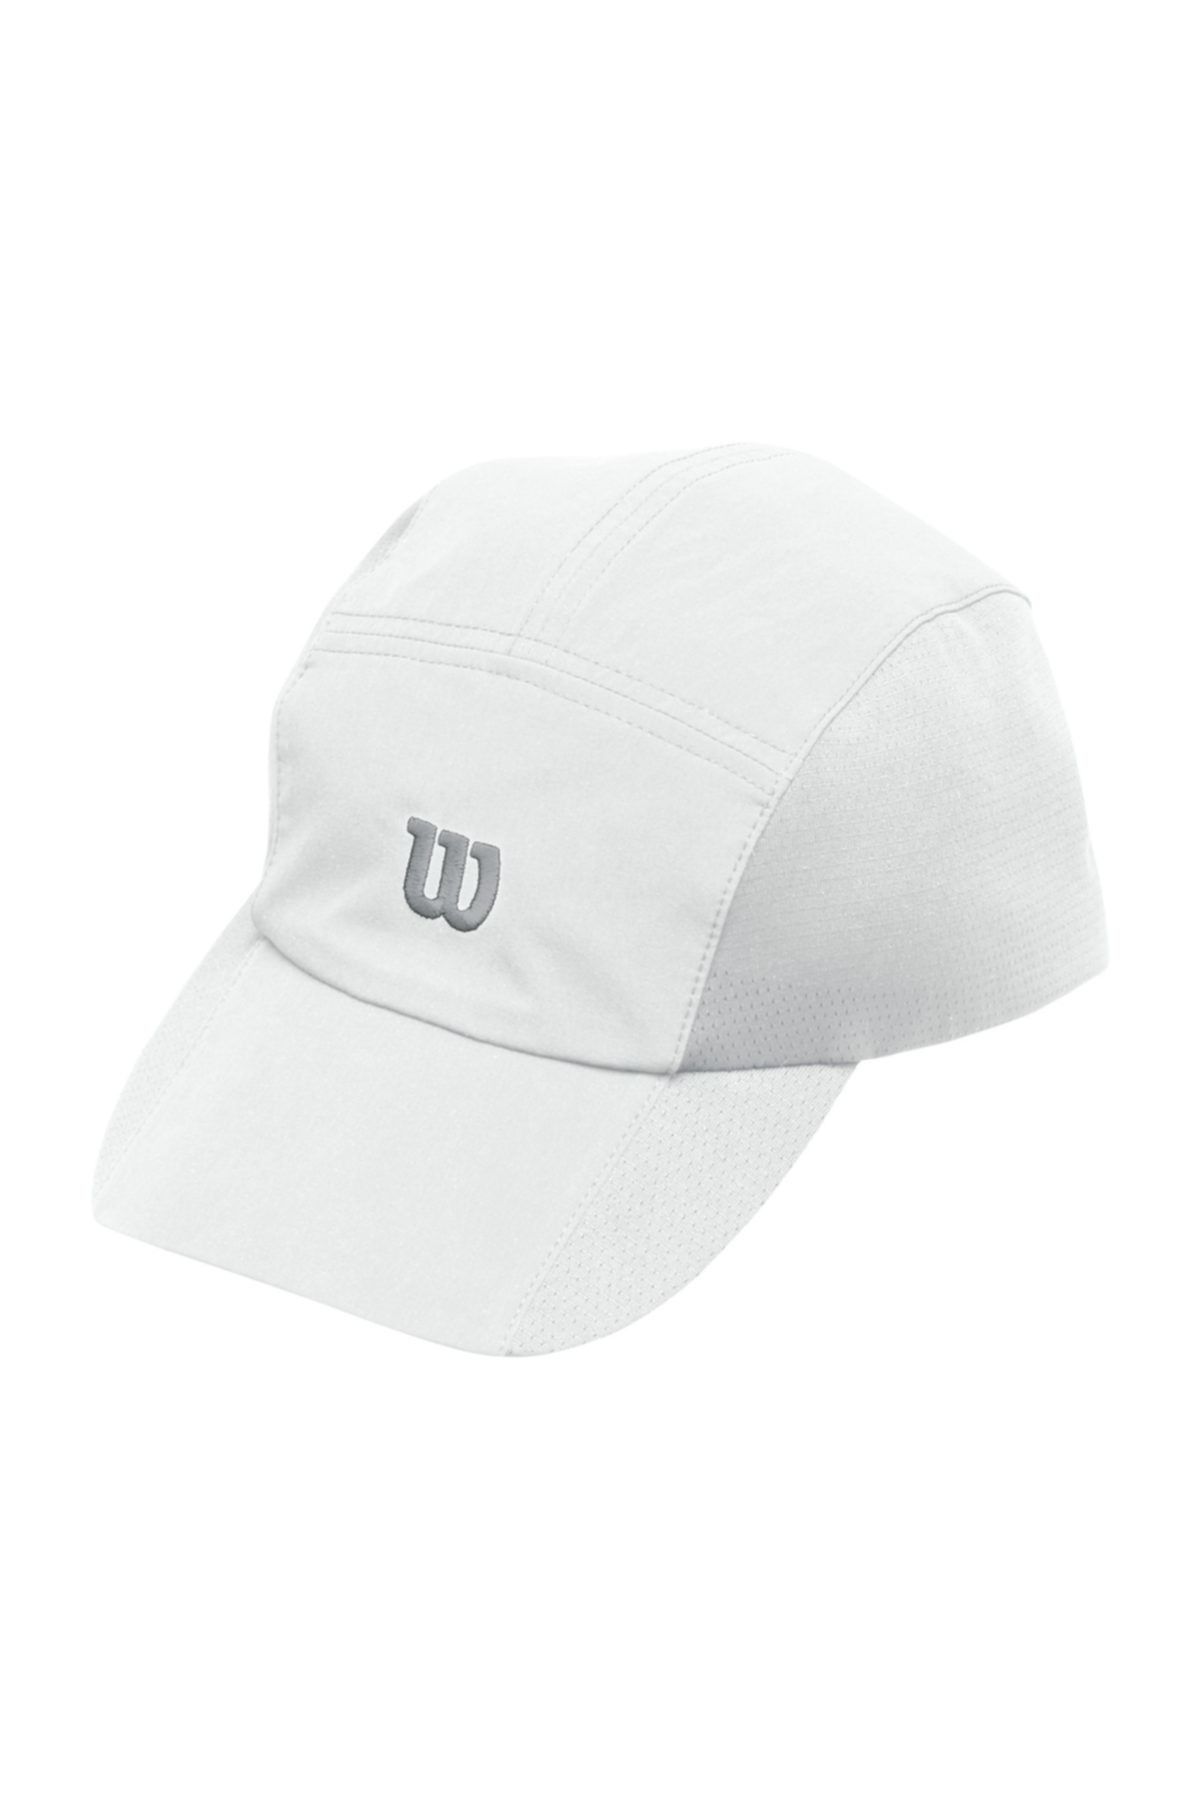 Wilson Şapka Rush Stretch  Beyaz ( WR5004100 )